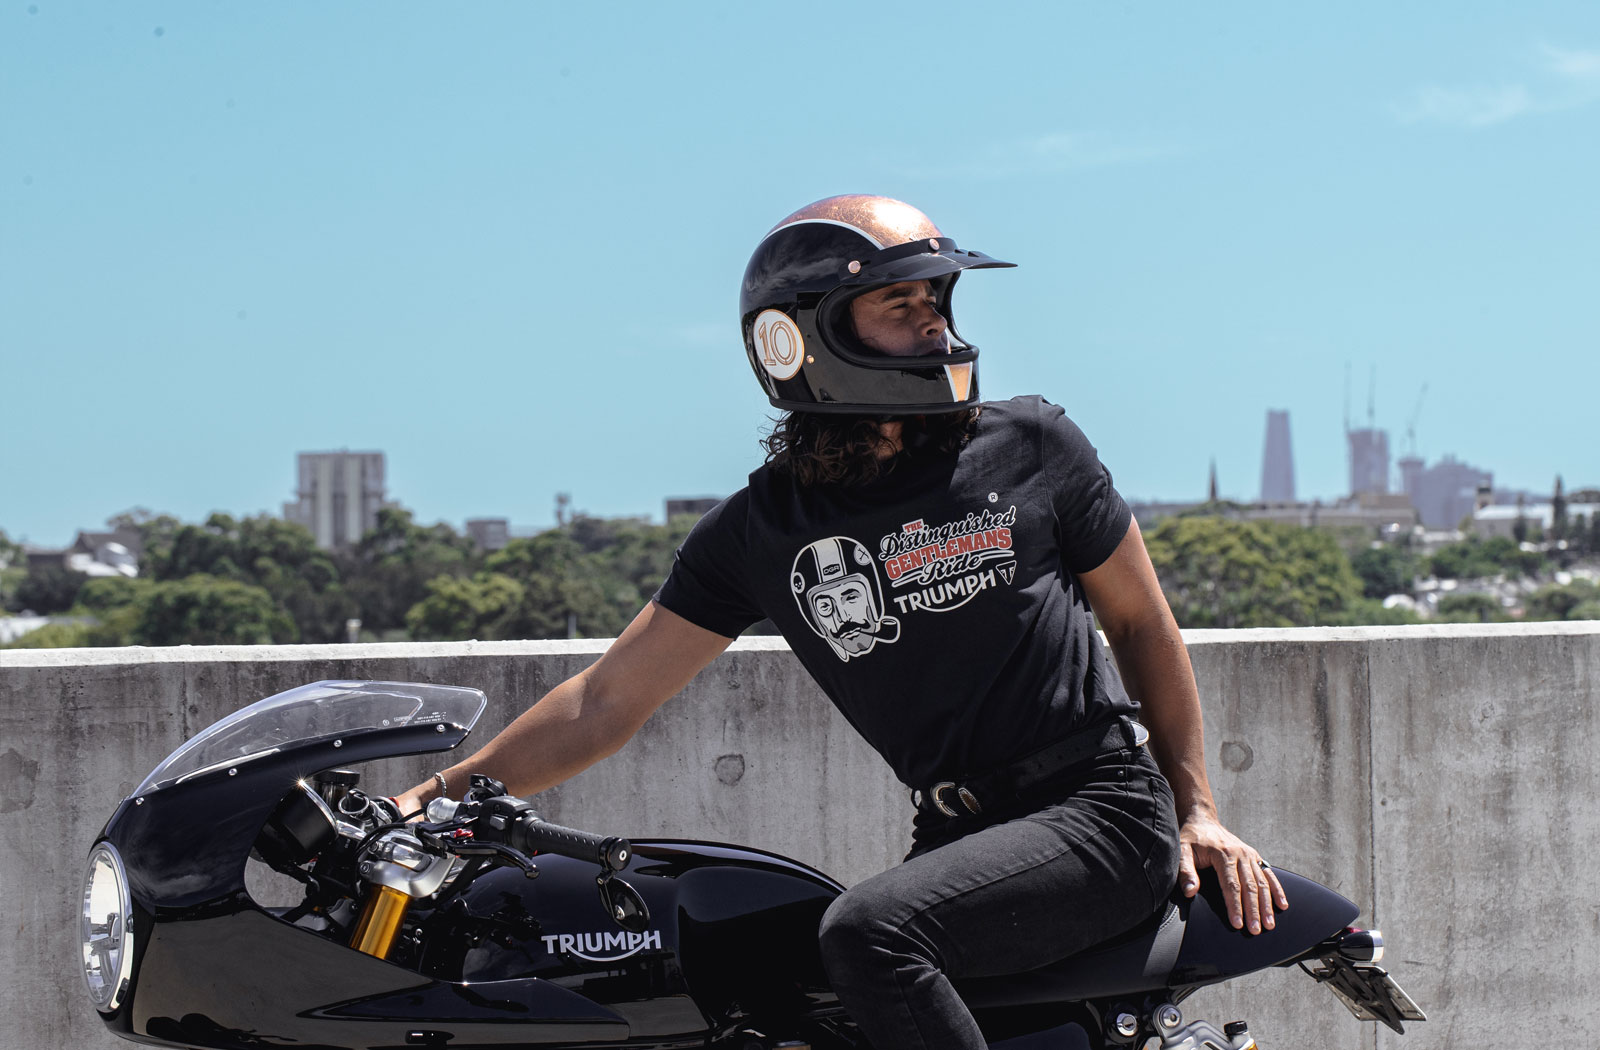 DGR x Triumph motorcycles apparel